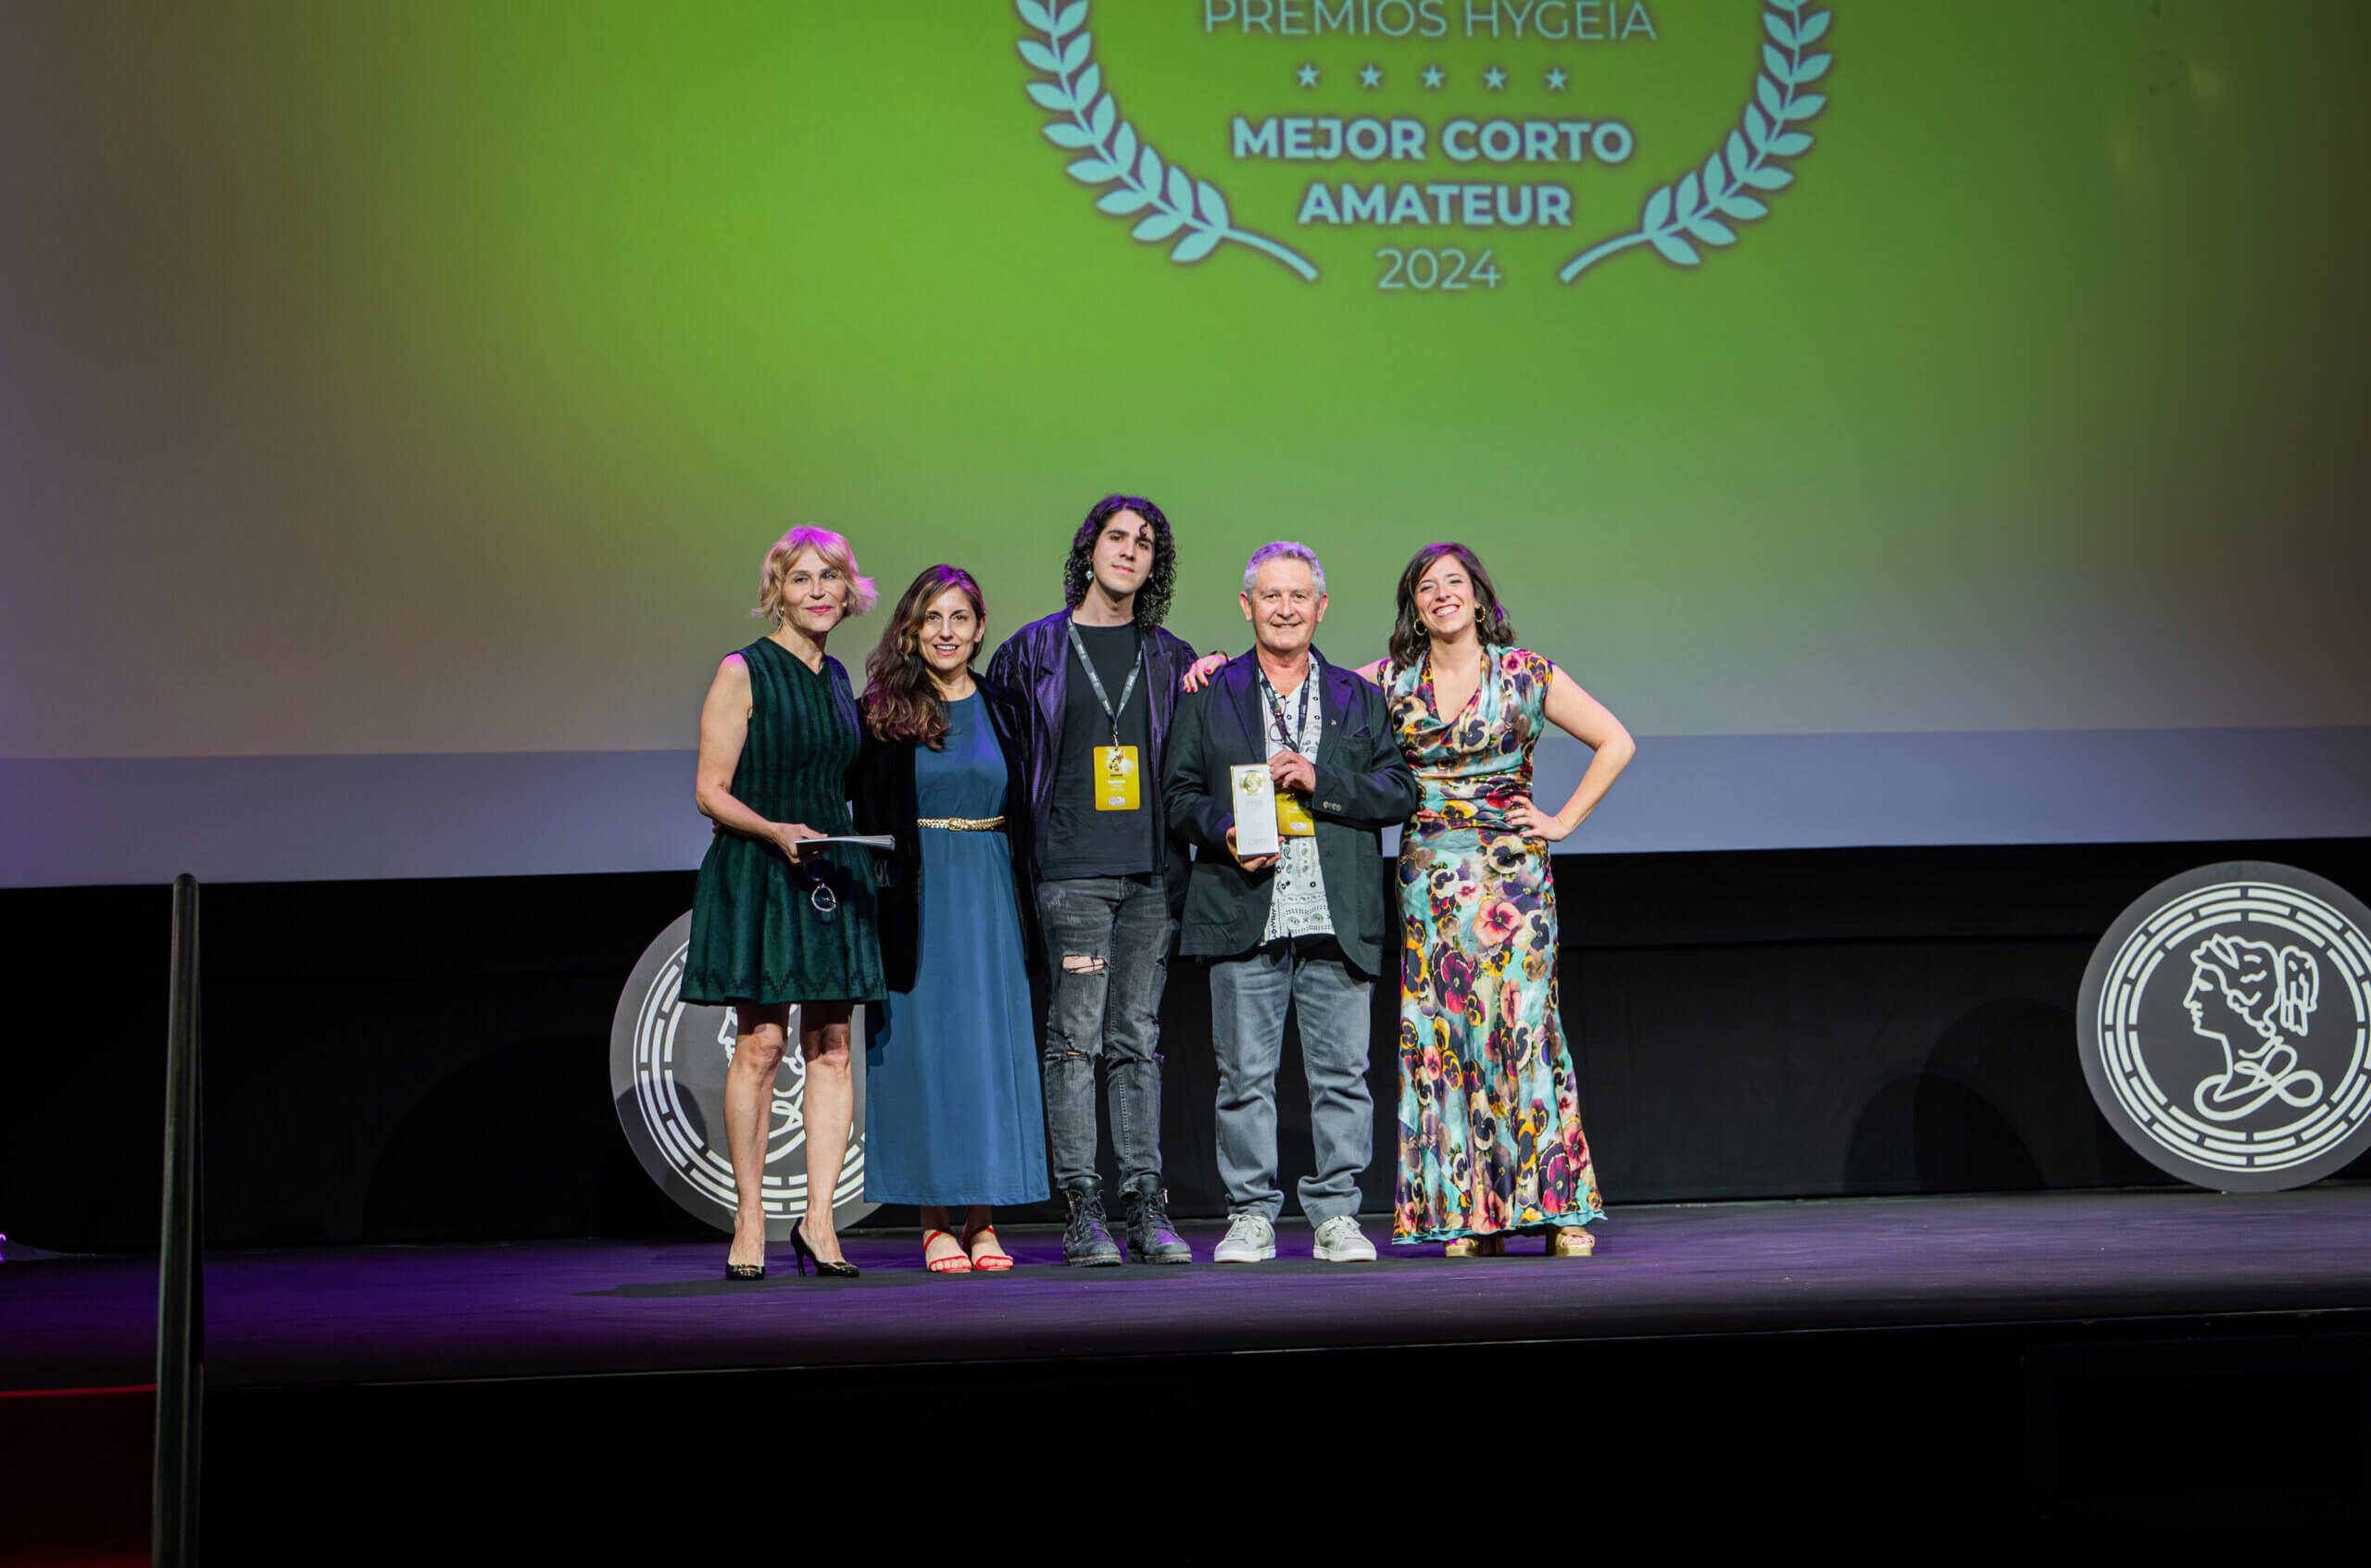 IV Premios Hygeia: ganador Mejor Corto Amateur